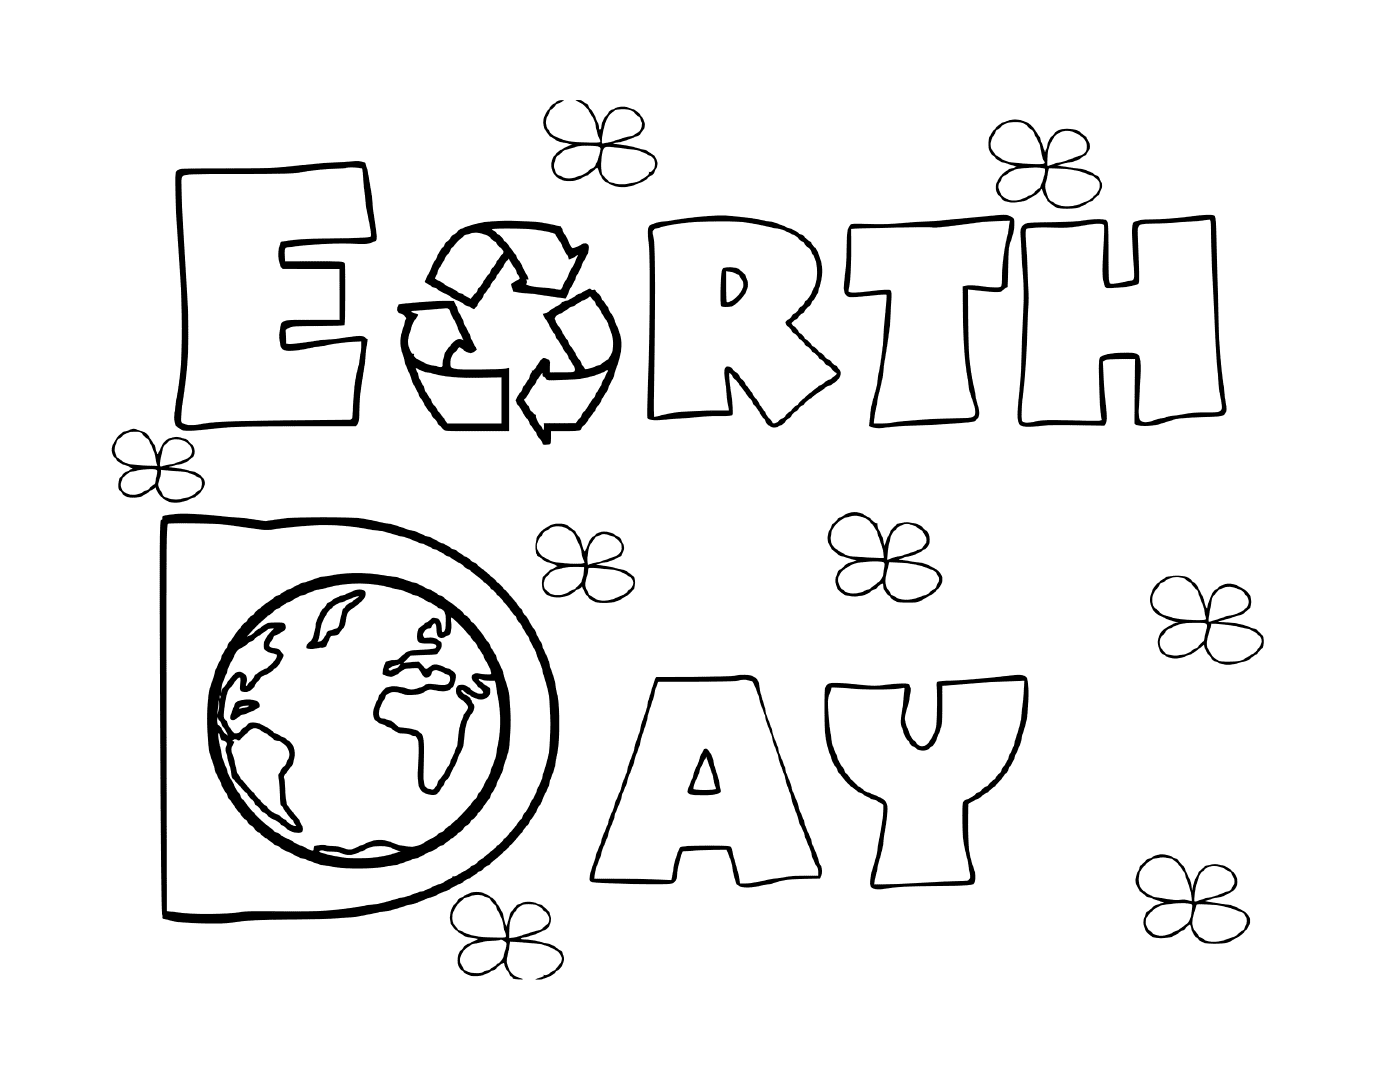  Aktivität für den Tag der Erde 